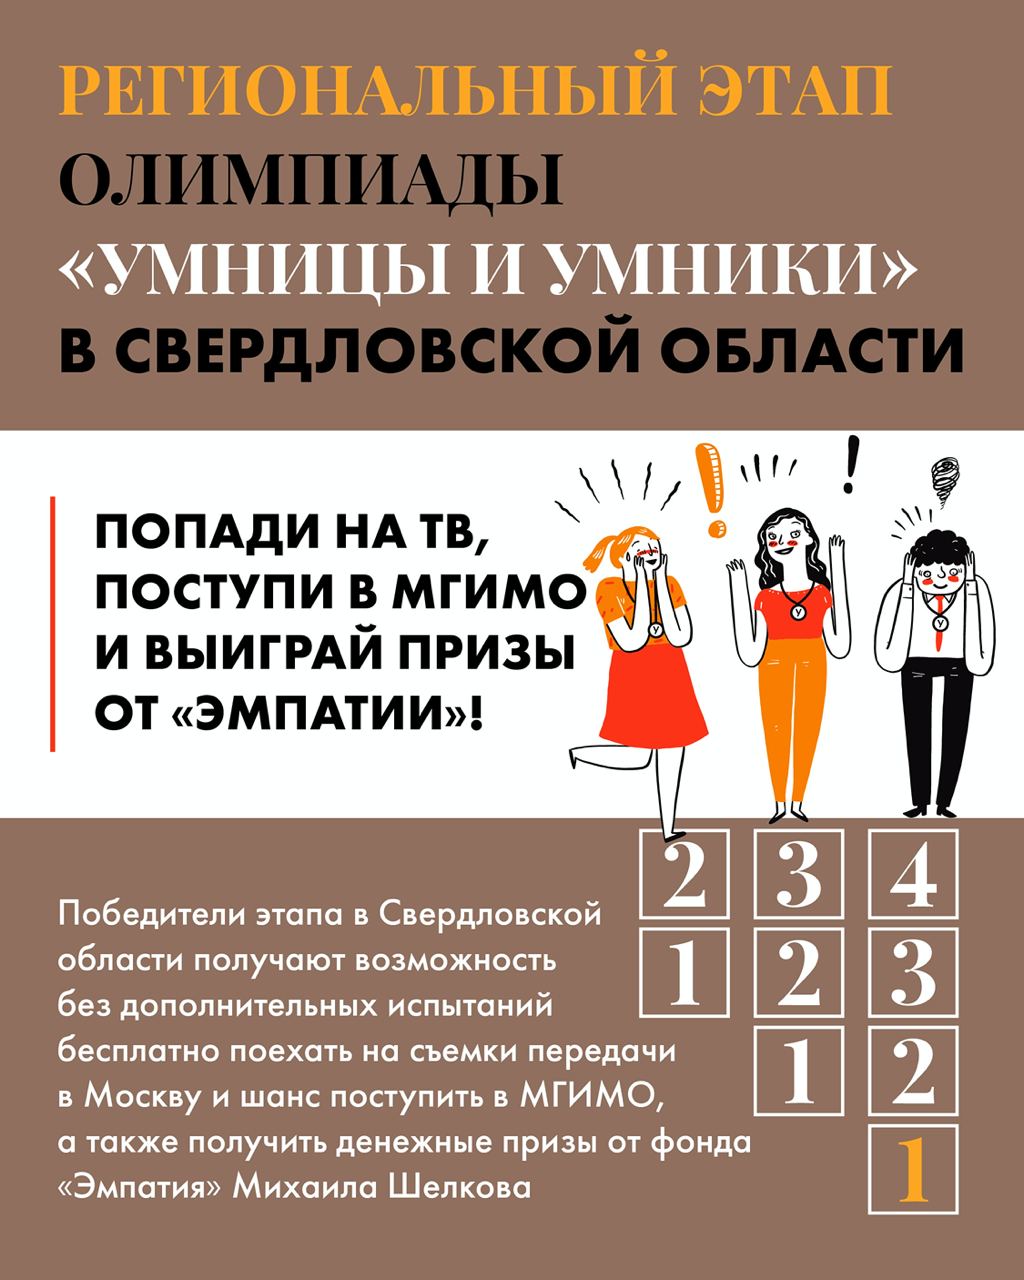 В Свердловской области готовят будущих умниц и умников